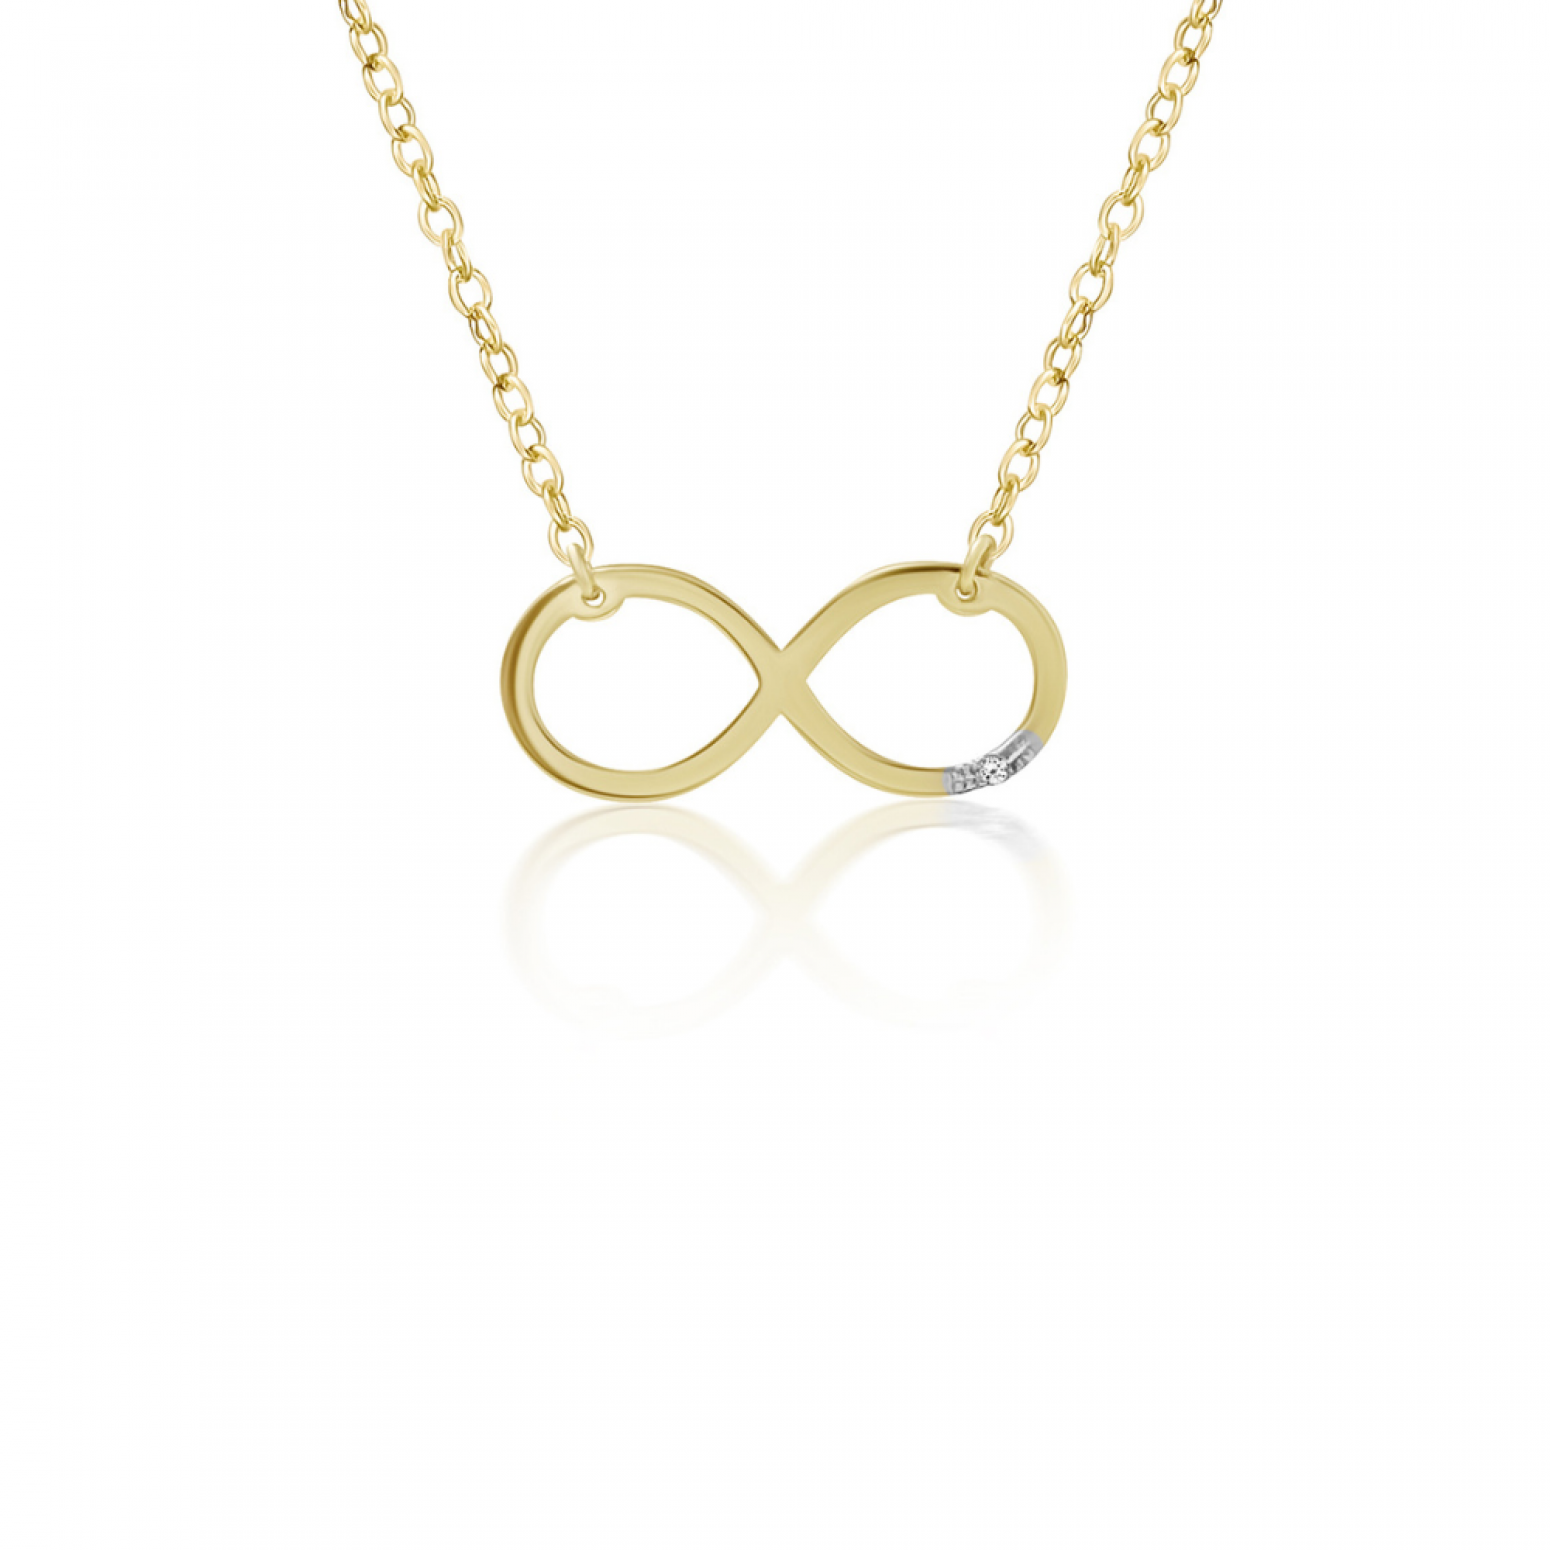 Infinity necklace, Κ14 gold with diamond 0.003ct, VS2, H ko5304 NECKLACES Κοσμηματα - chrilia.gr